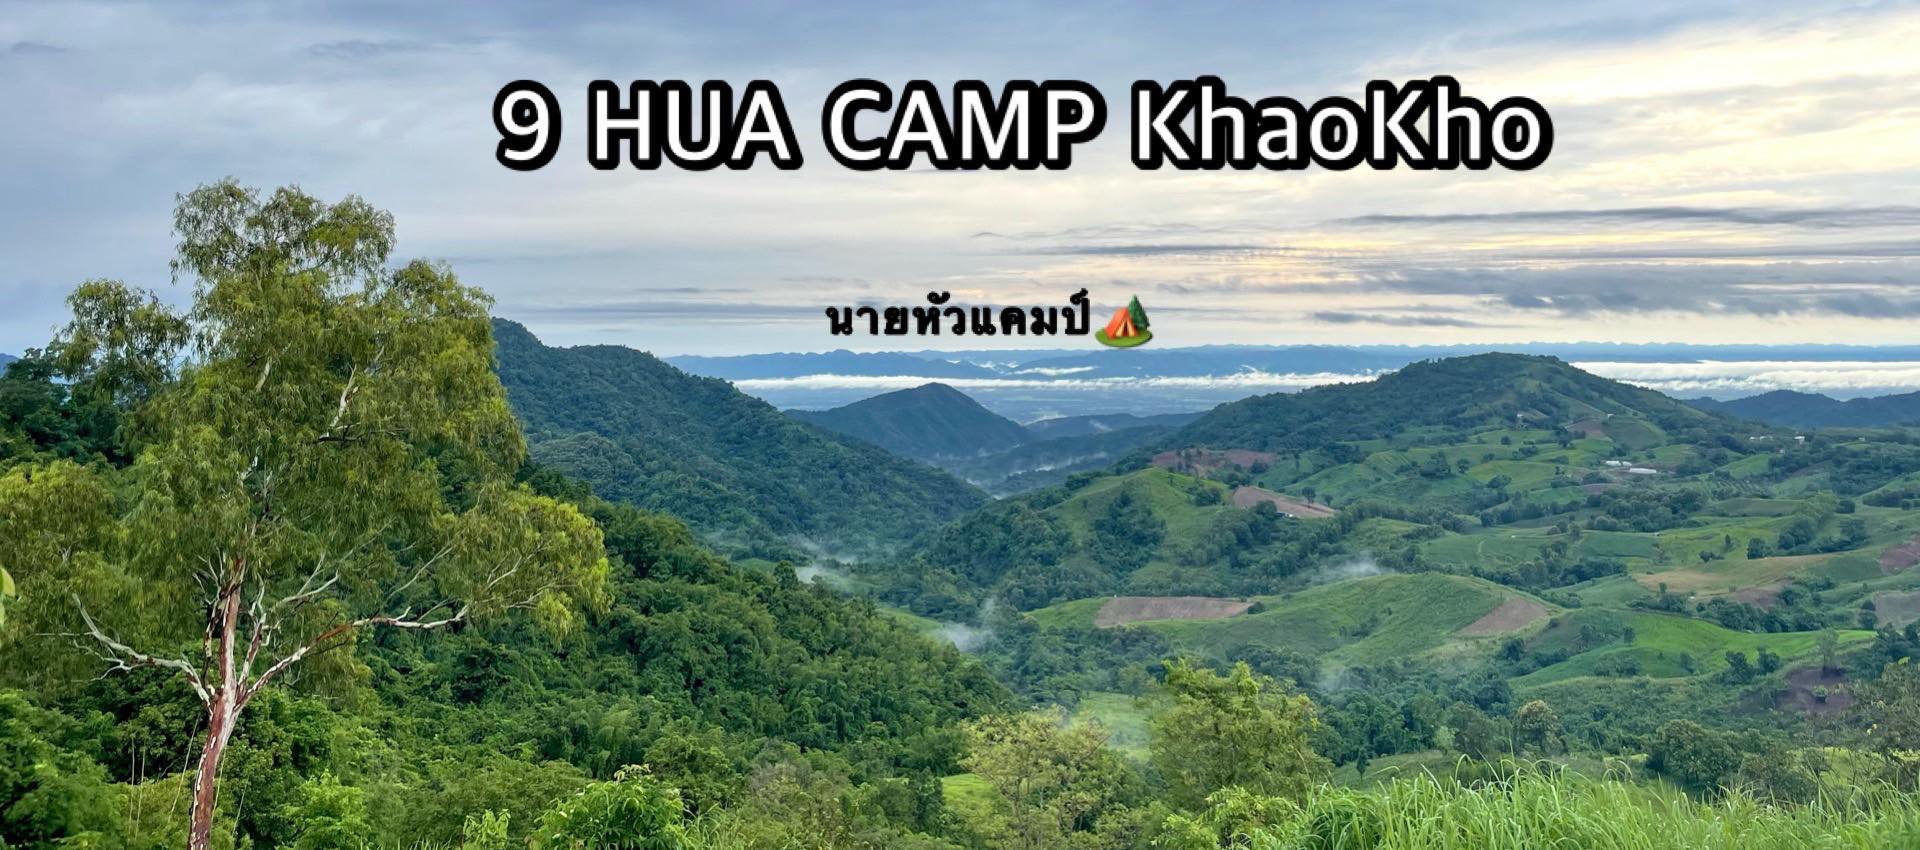 รูป 9 Hua Camp Khaokho นายหัวแคมป์